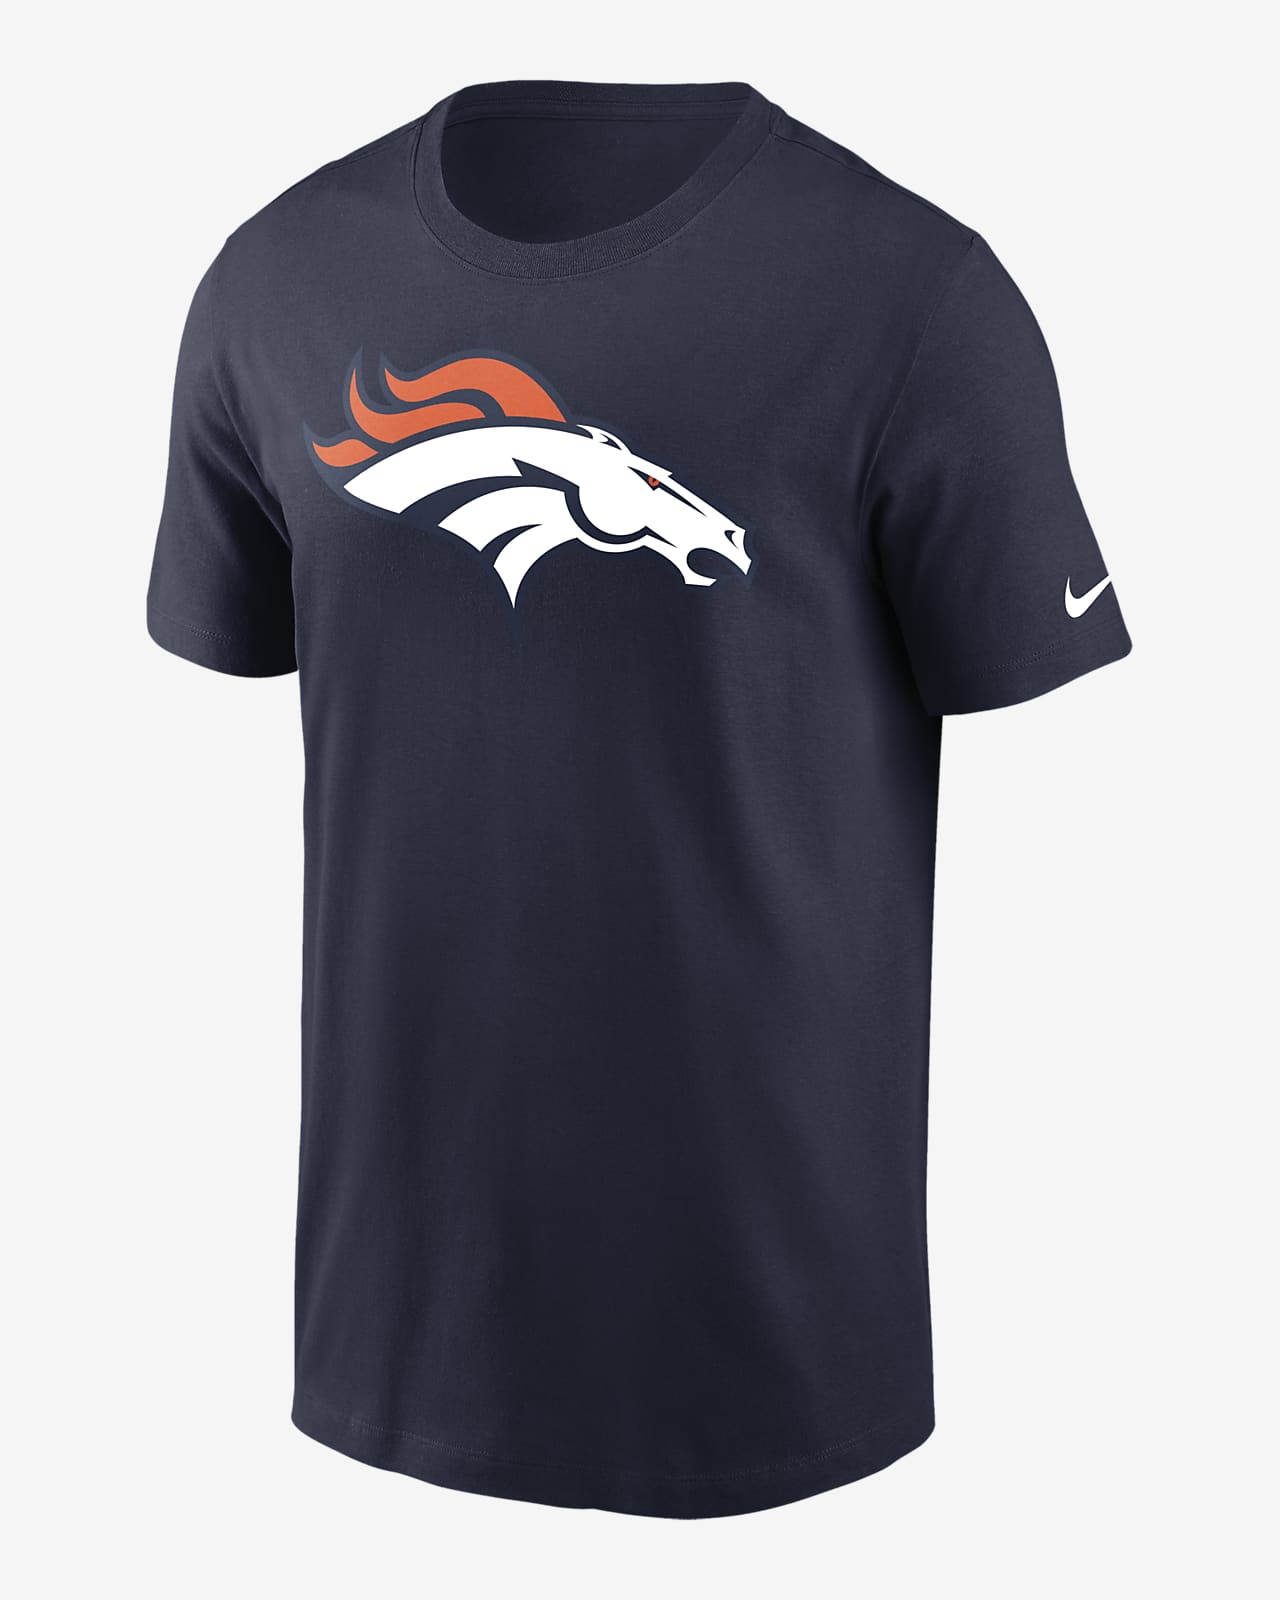 Playera para hombre Nike Logo Essential (NFL Denver Broncos)